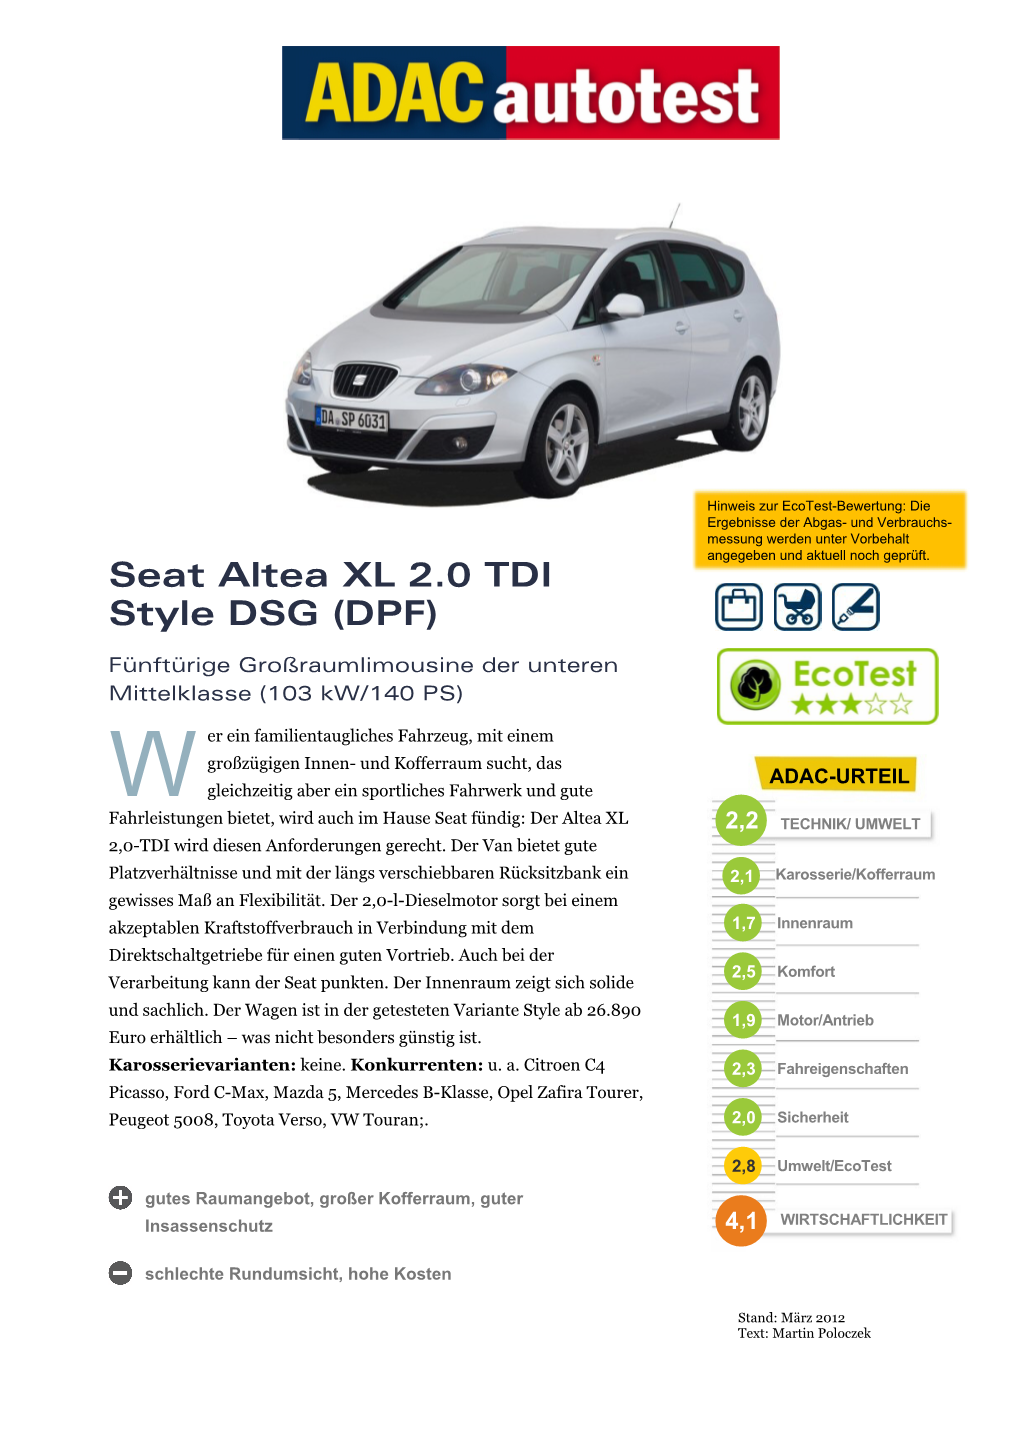 Seat Altea XL 2.0 TDI Style DSG (DPF)